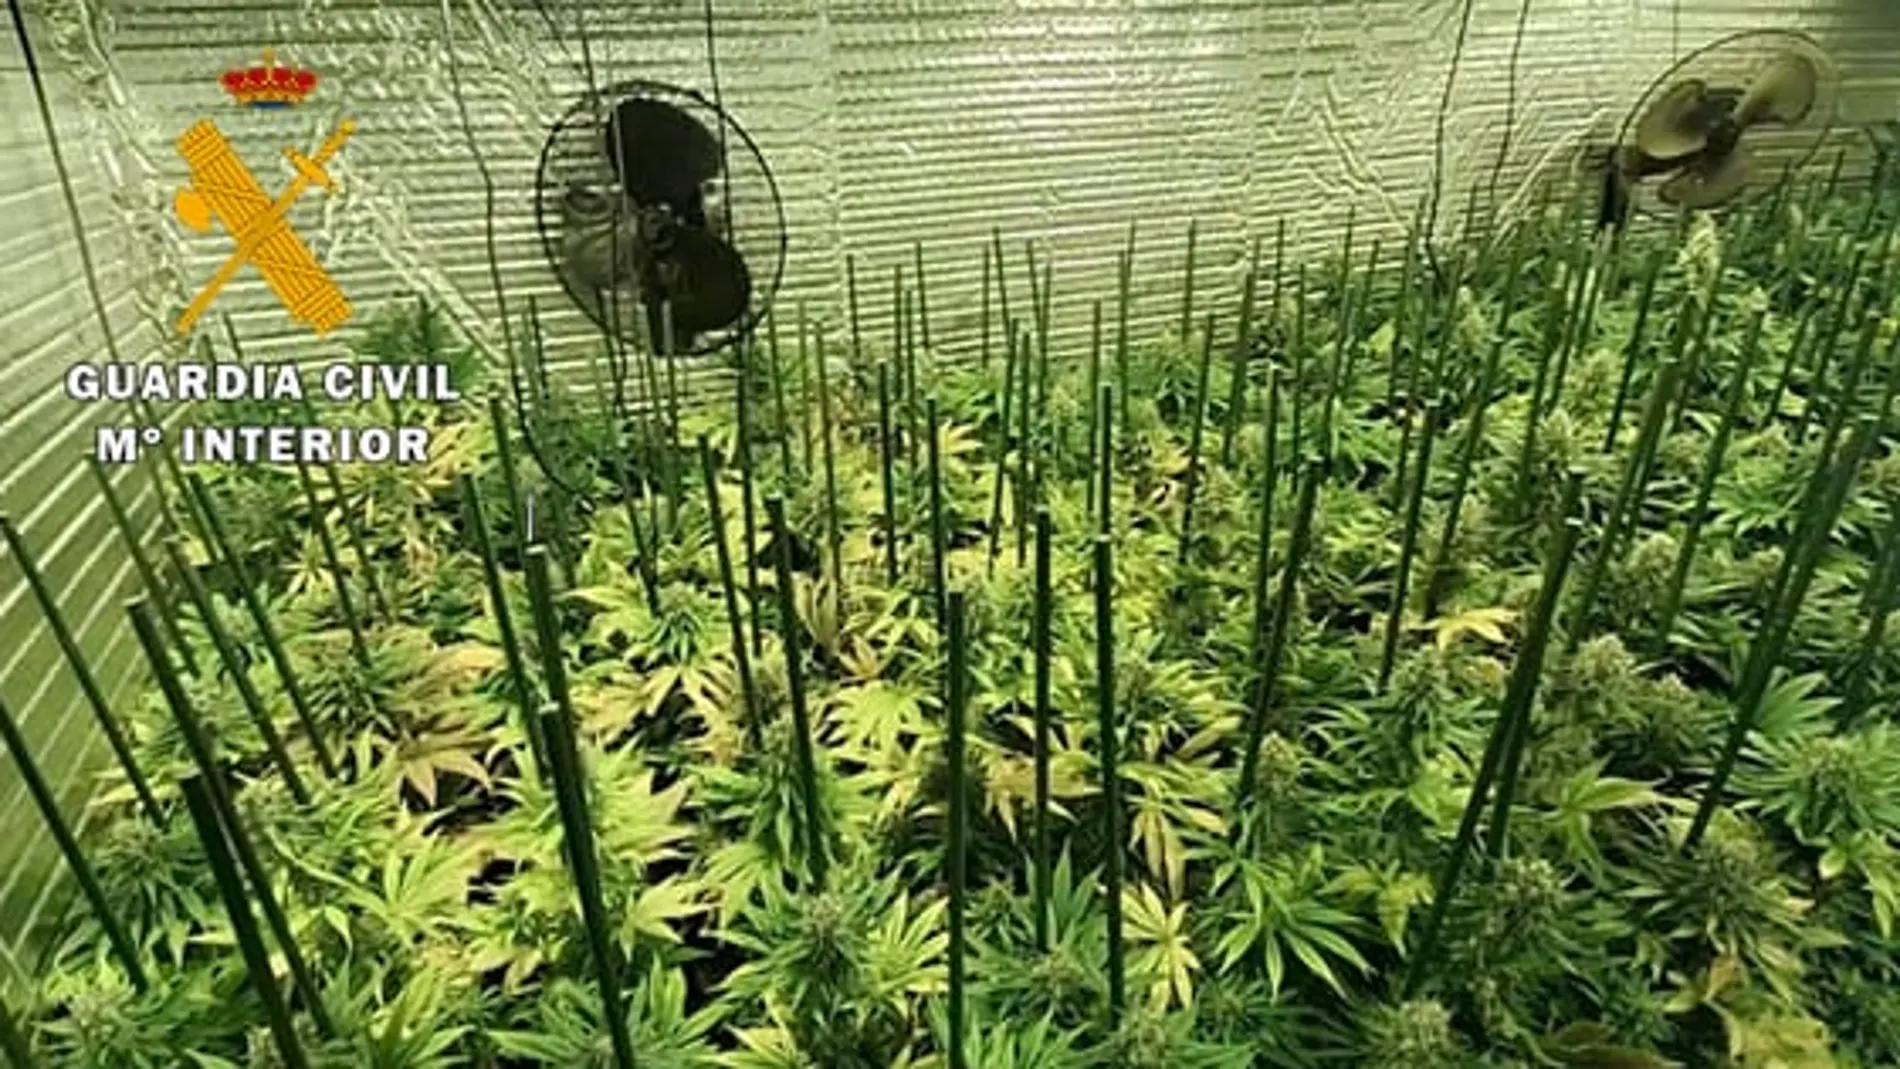 Plantas de marihuana que cultivaba esta organización en un pueblo de Valladolid